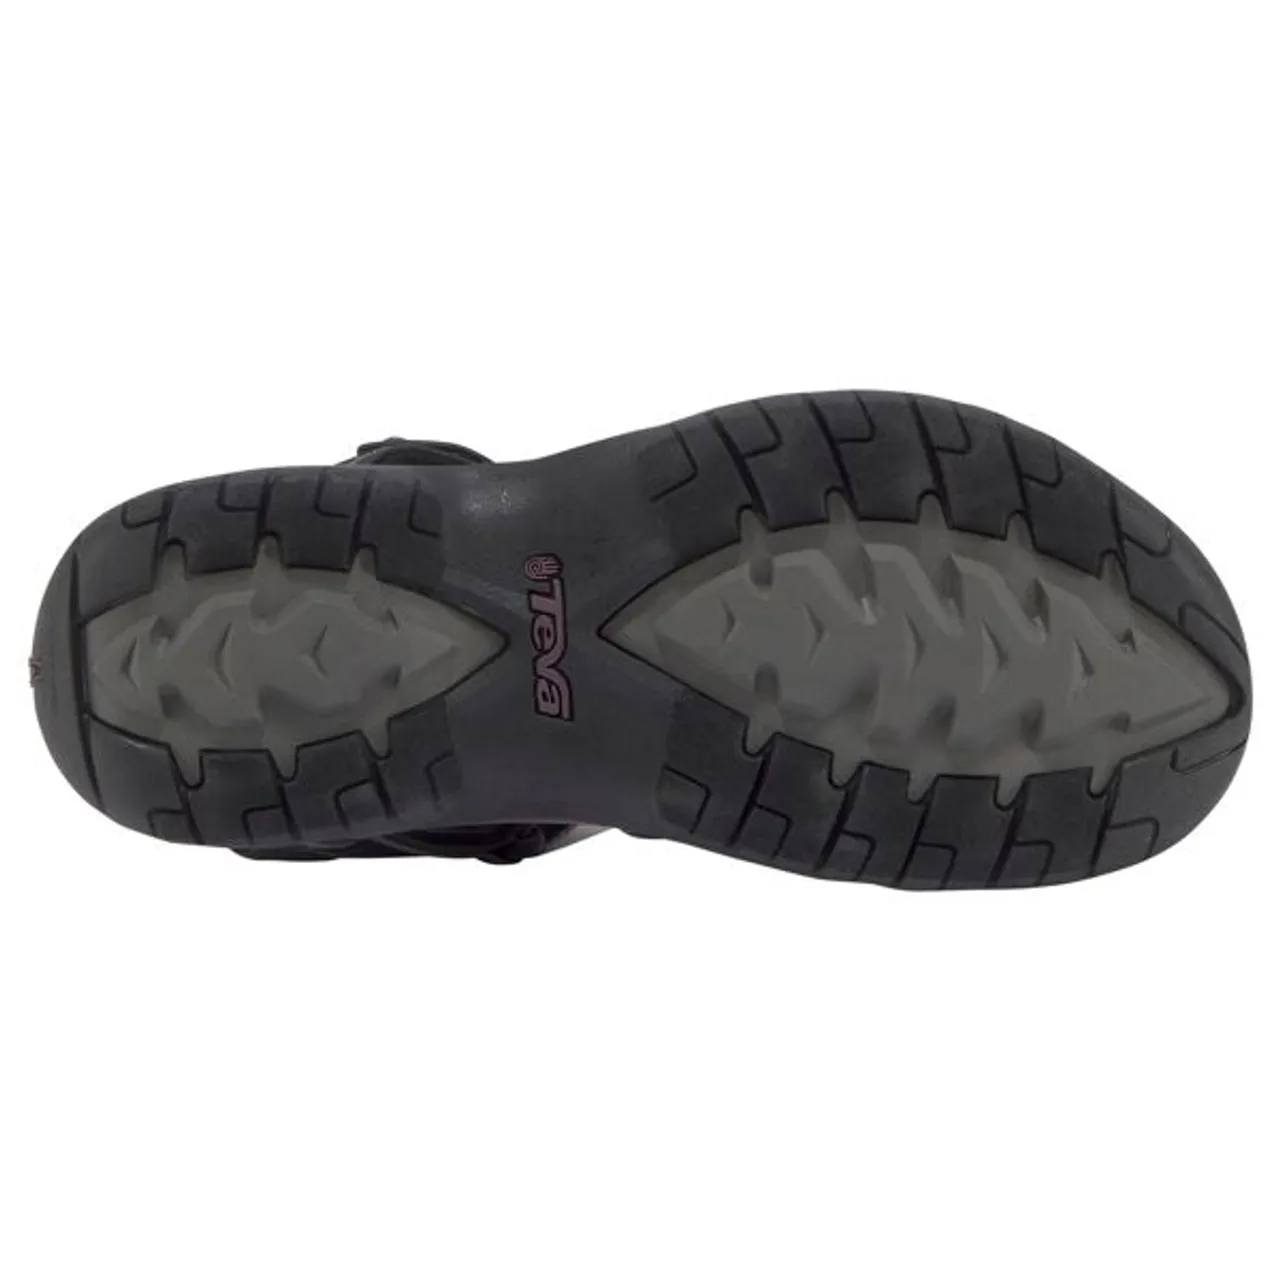 Sandale TEVA "Tirra" Gr. 36, lila (schwarz, grau, beere) Schuhe Outdoorsandale Riemchensandale Sandale Trekkingsandalen